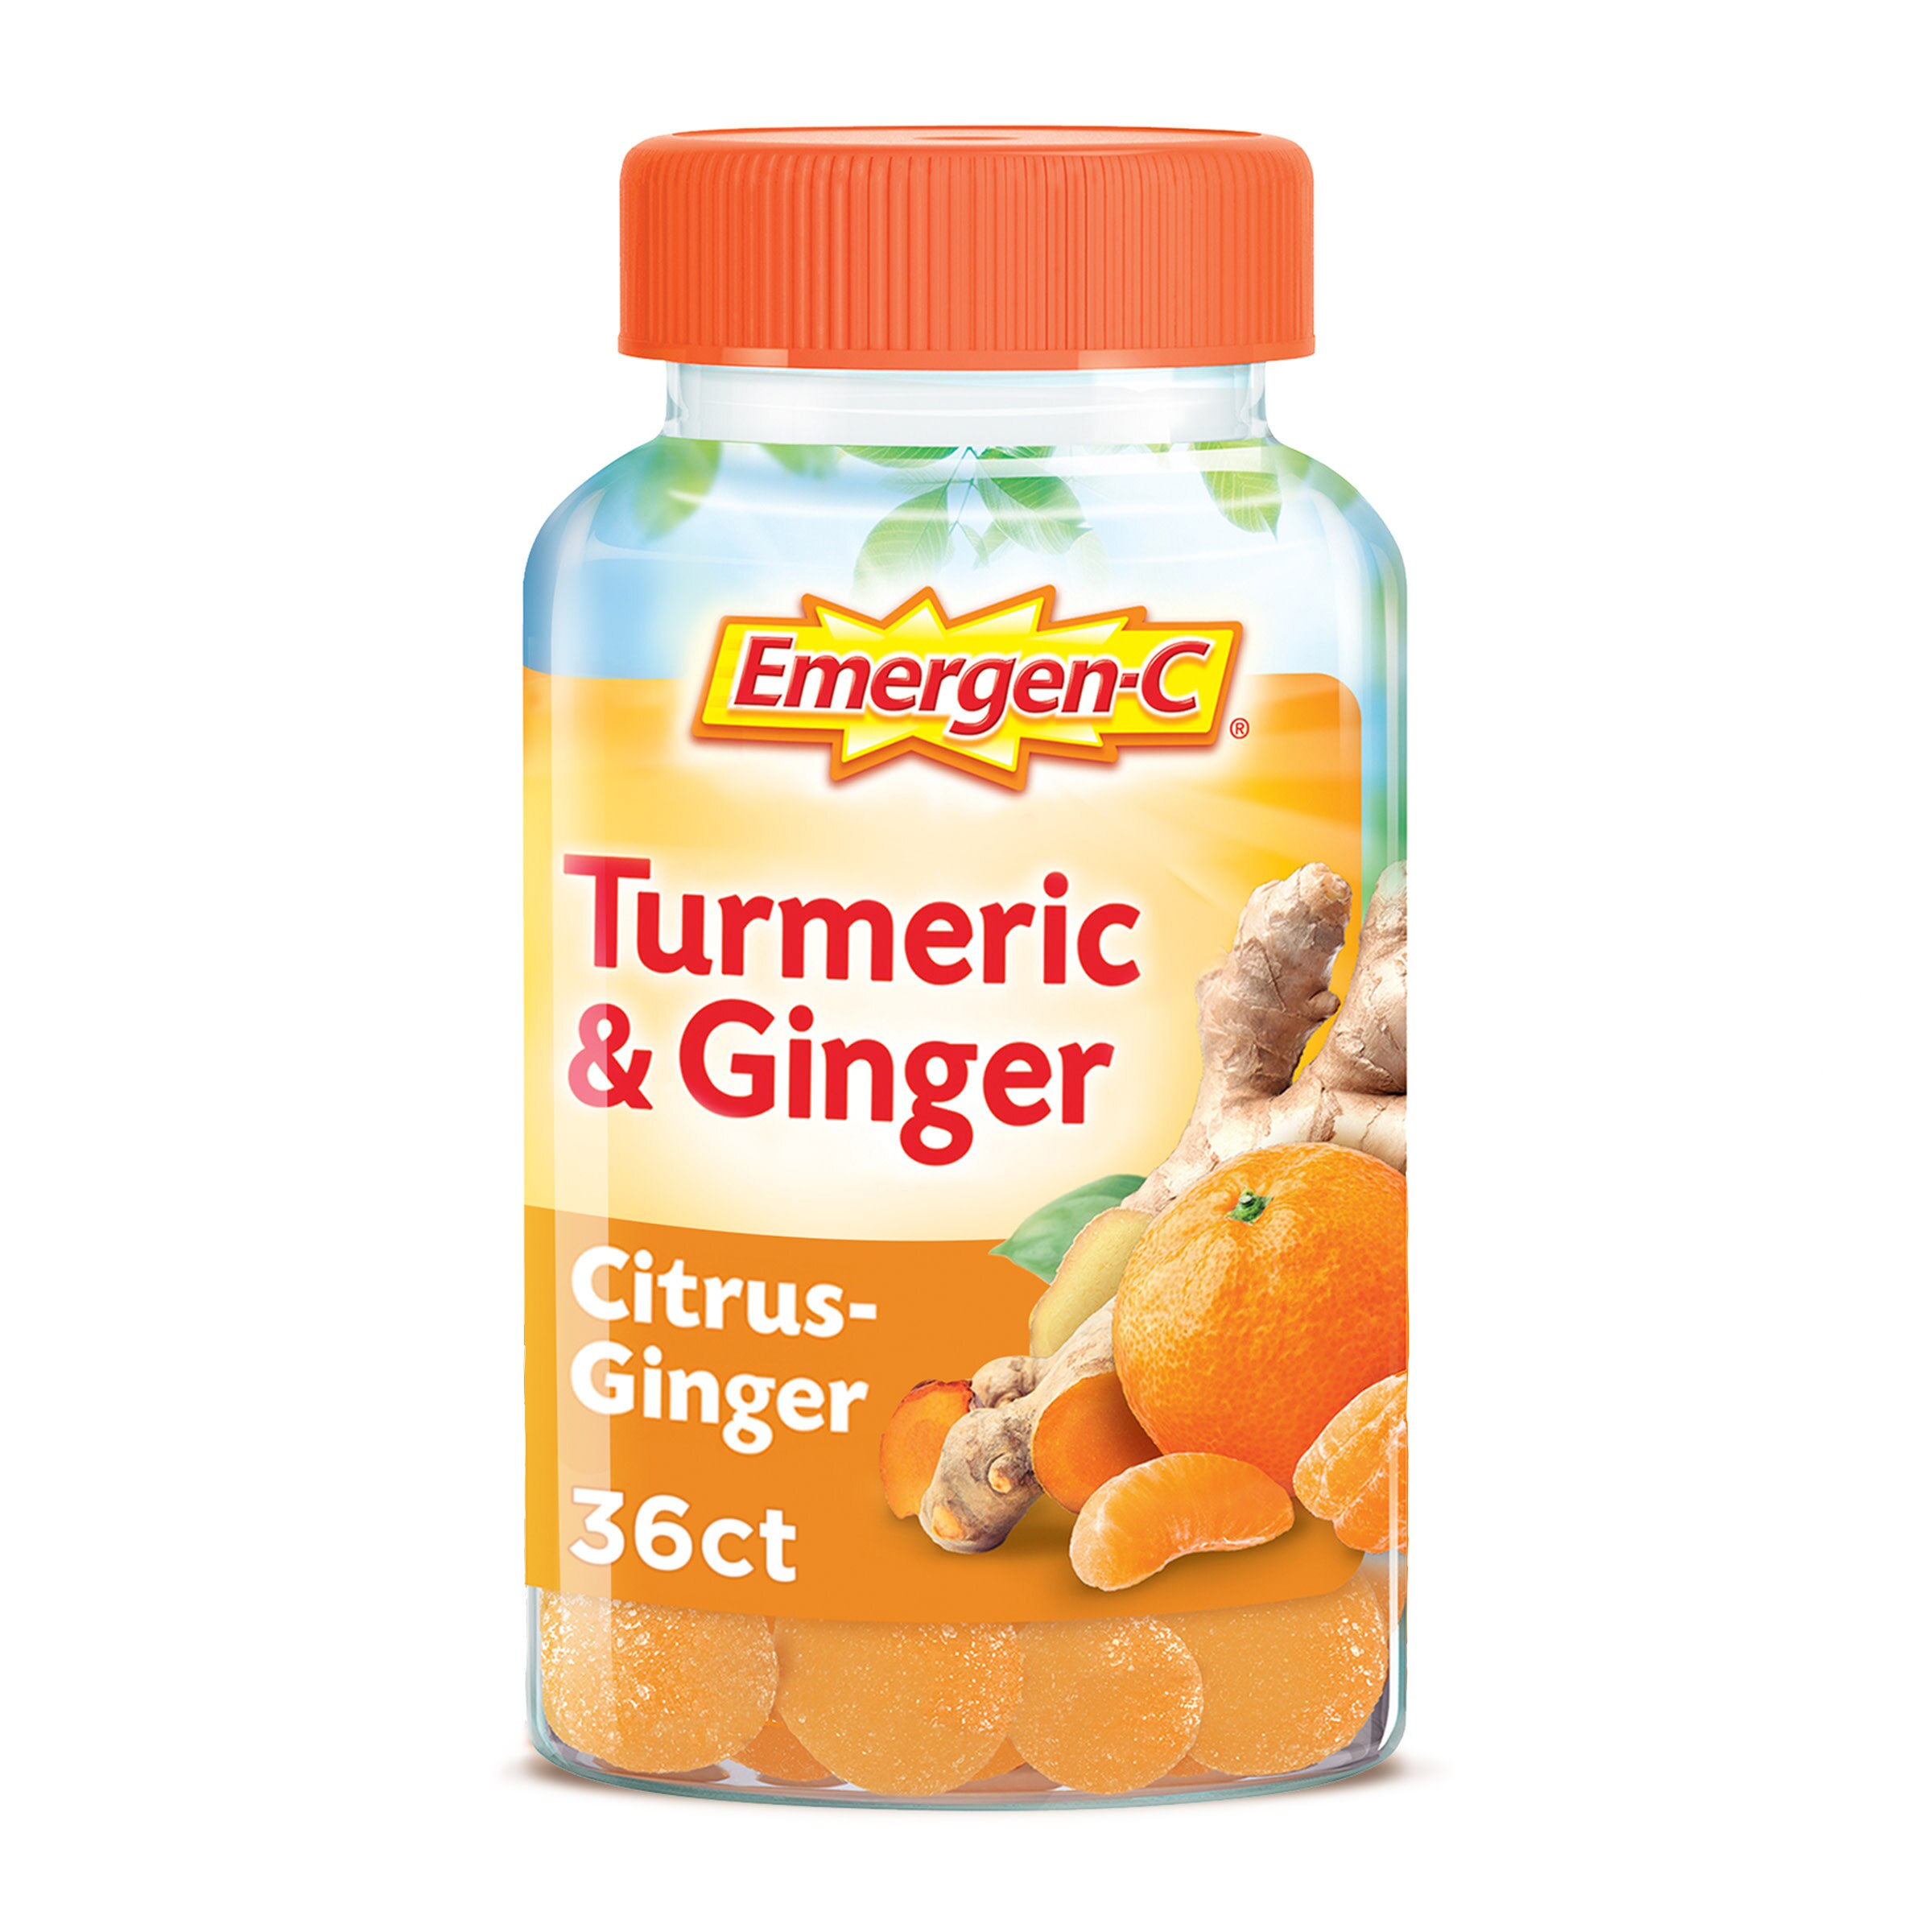 Emergen-C Turmeric & Ginger - Suplemento dietario en gomitas, 36 u.